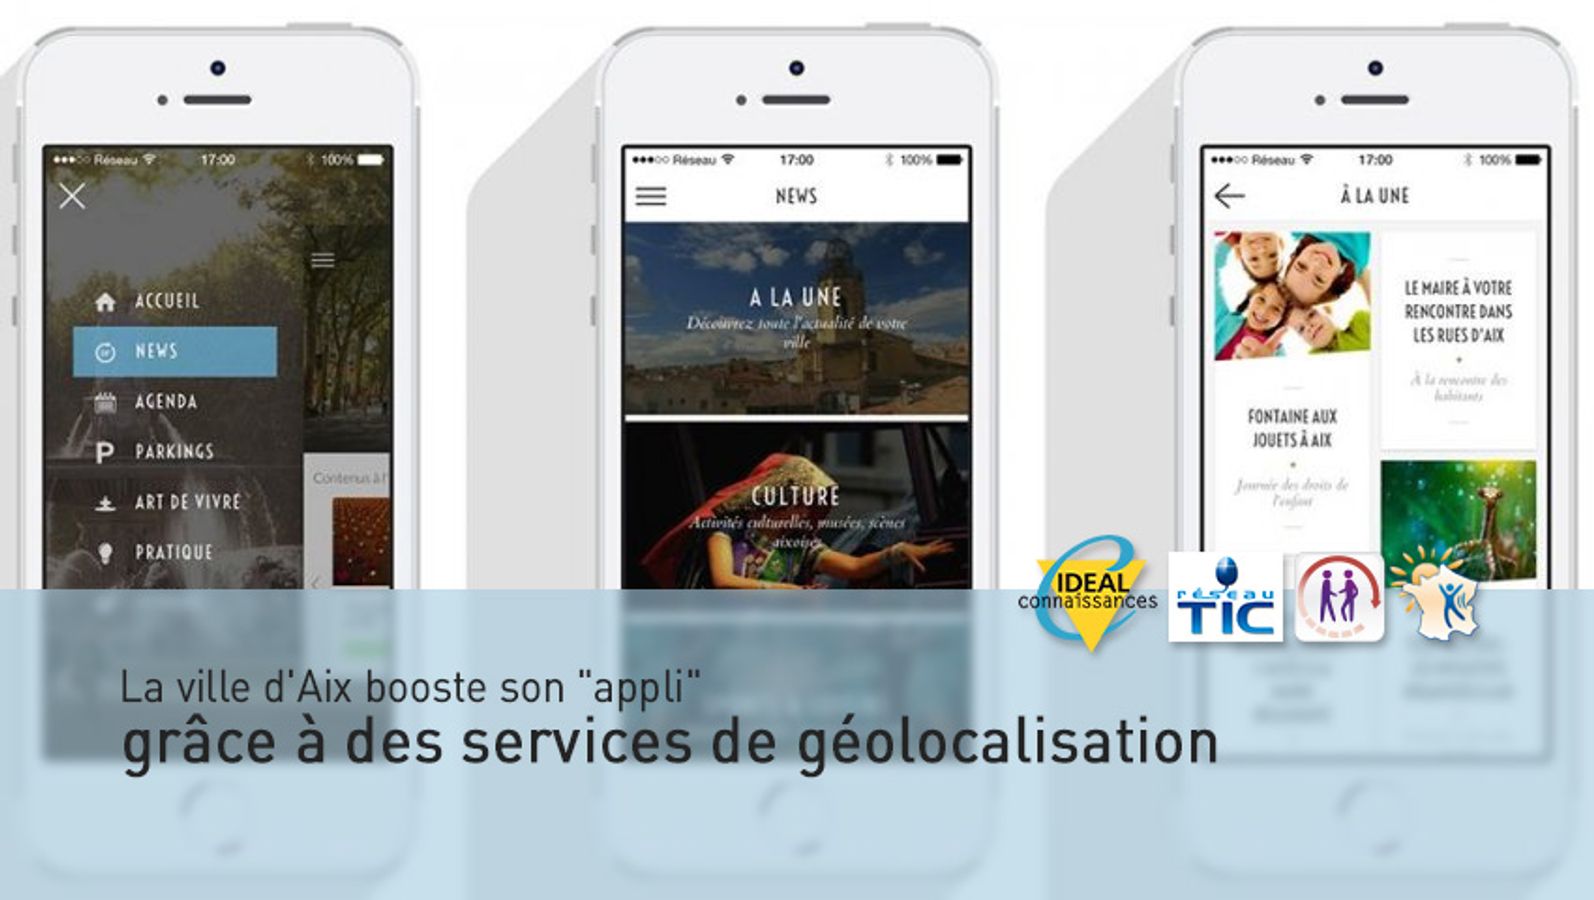 La ville d'Aix booste son "appli" grâce à des services de géolocalisation